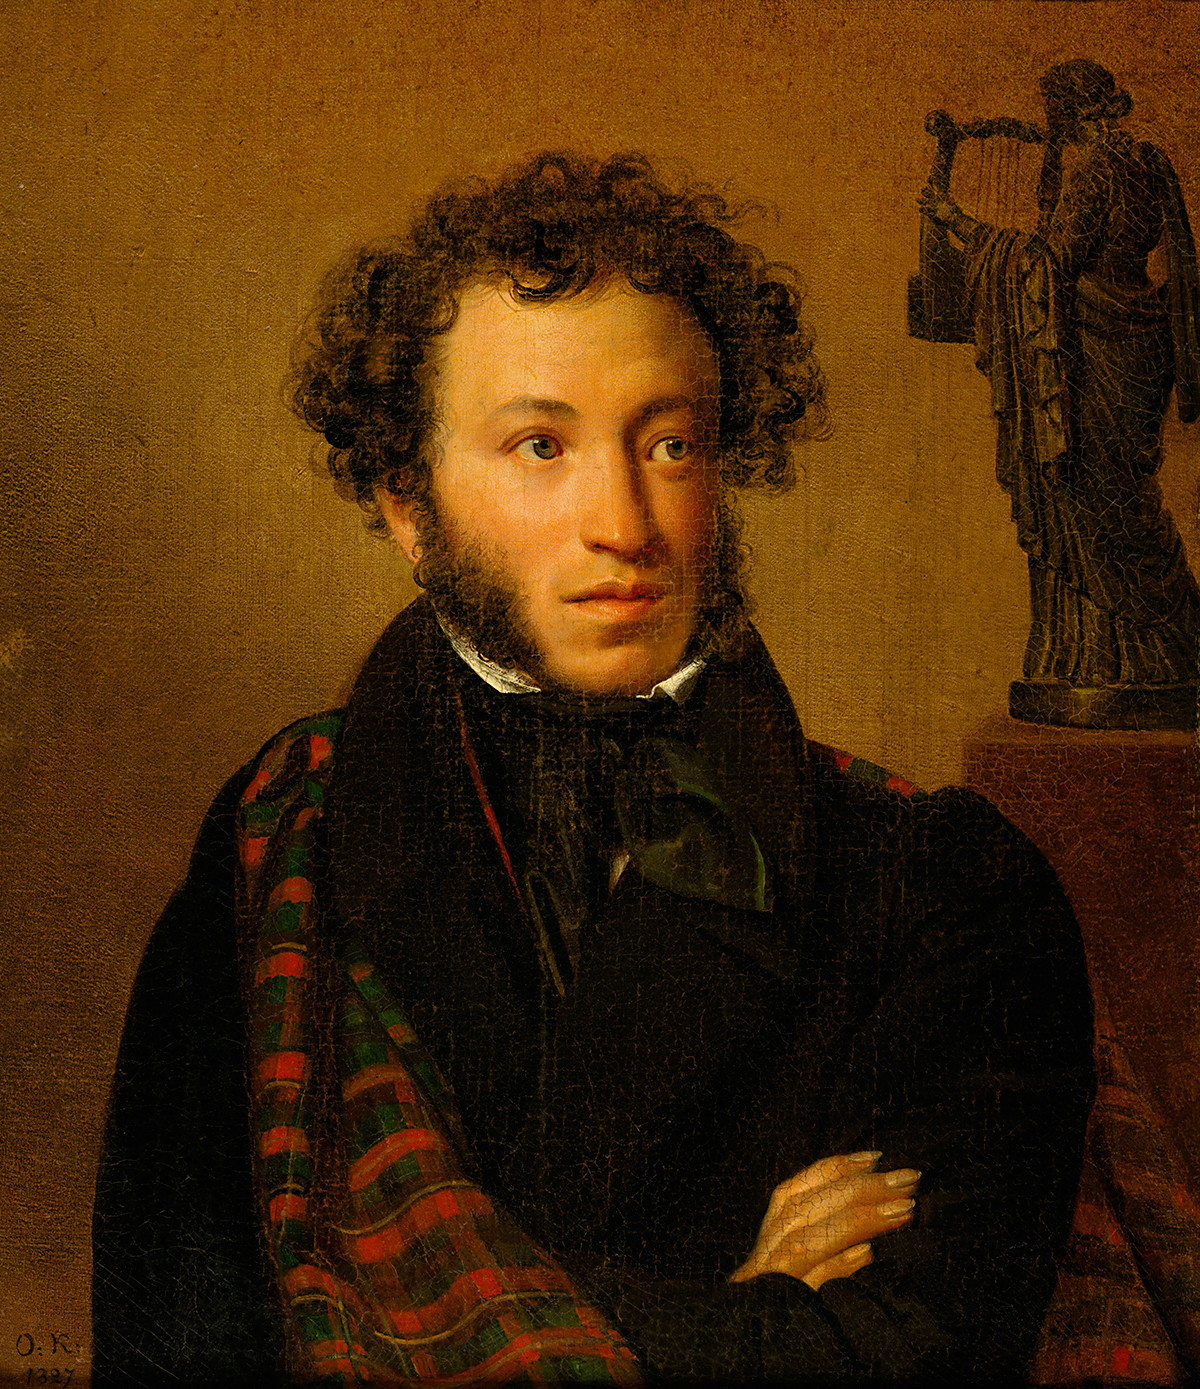 О. А. Кипренски. Портрет на А. С. Пушкин, 1827 година
